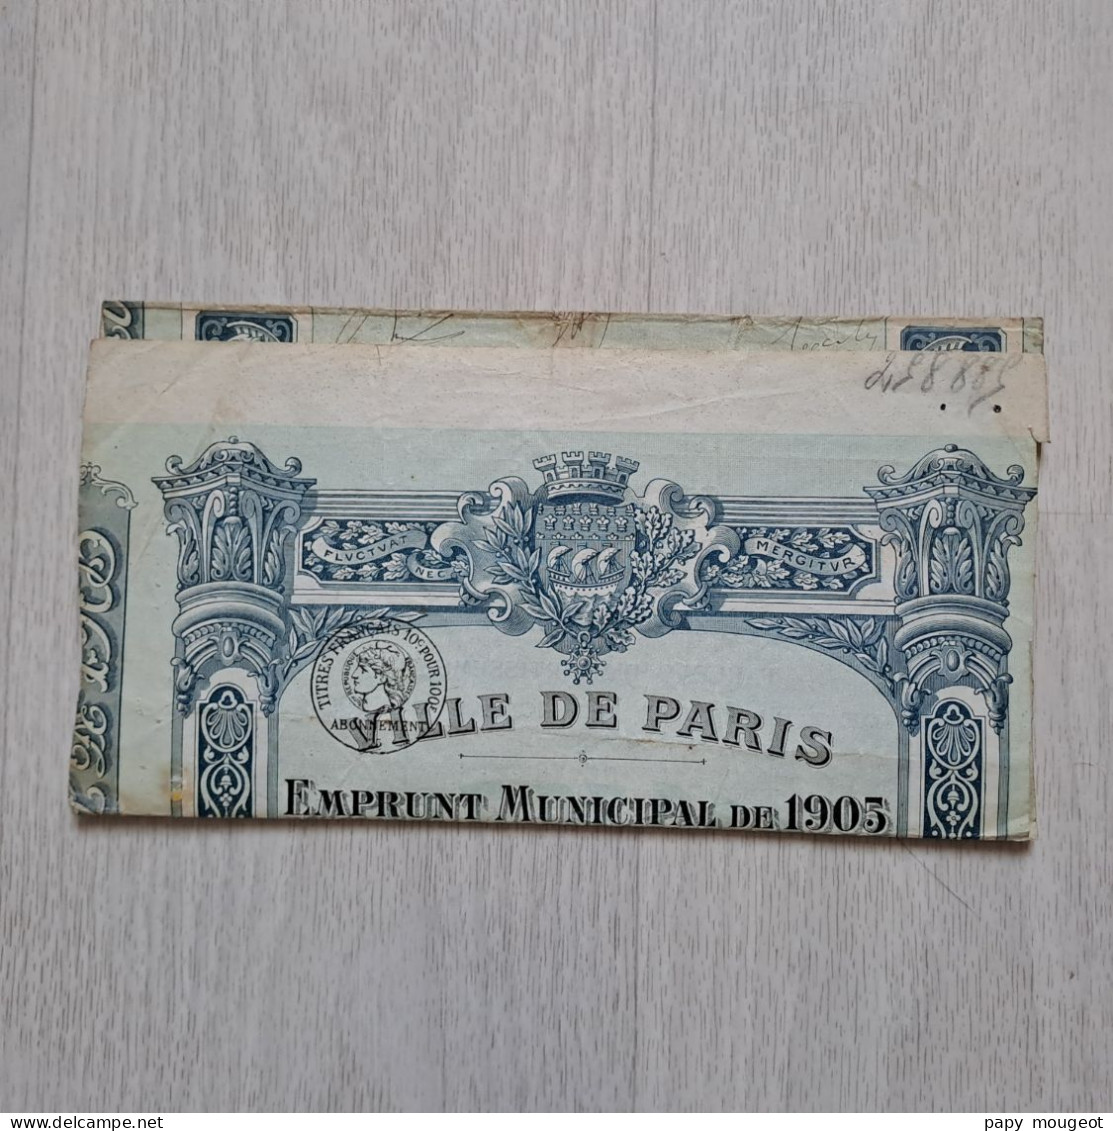 Ville De Paris - Emprunt Municipal De 1905 - Quart D'Obligation Au Porteur N° 244,976 (état) - P - R